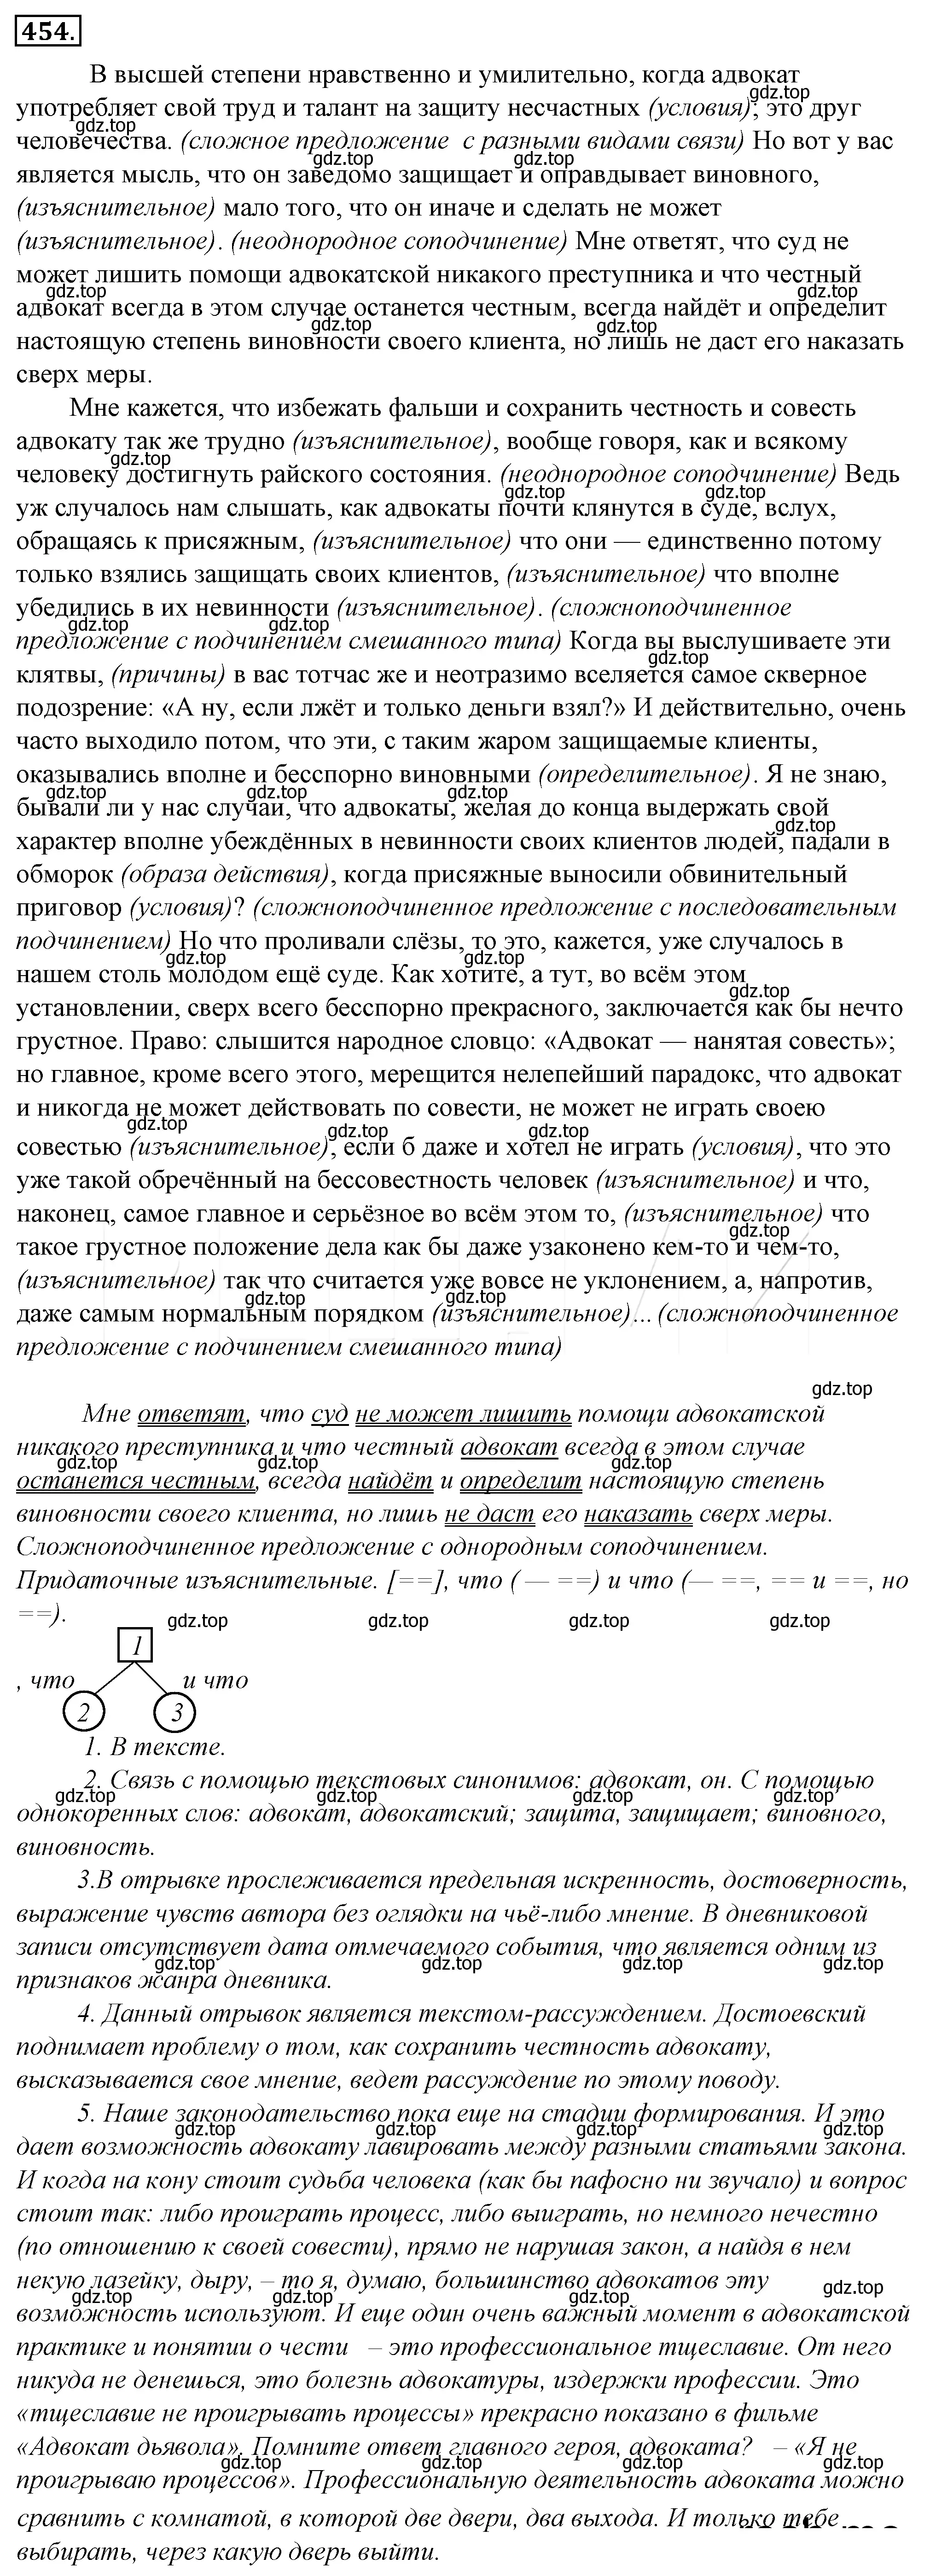 Решение 4. номер 119 (страница 164) гдз по русскому языку 10-11 класс Гольцова, Шамшин, учебник 2 часть